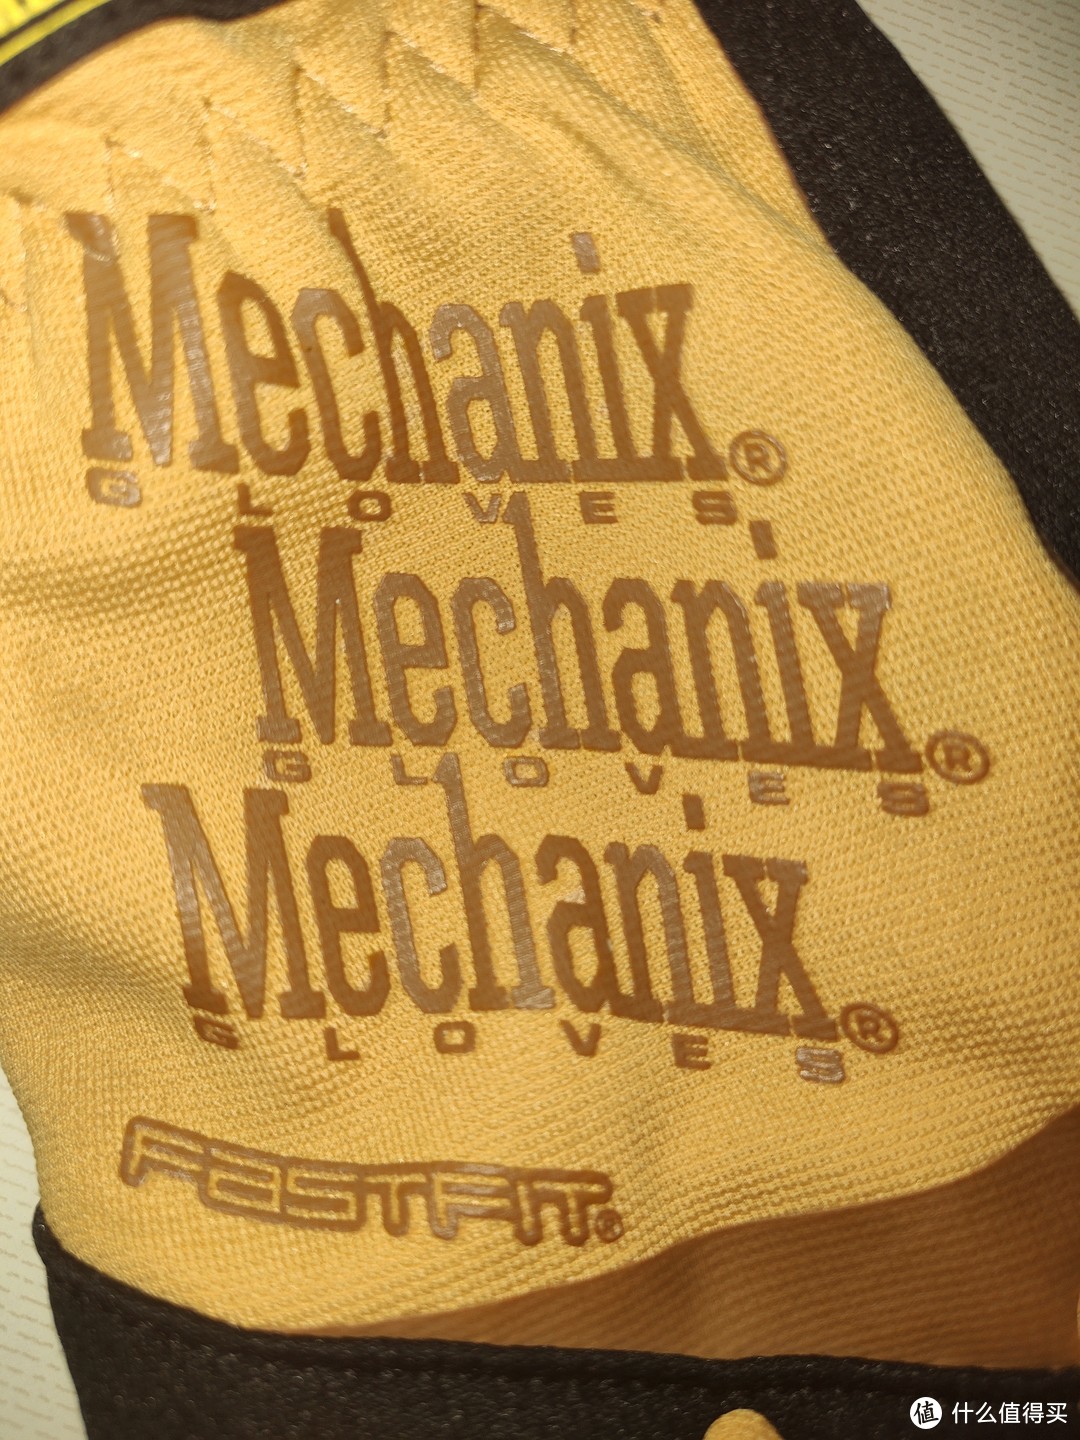 Mechanix wear Leather Gloves